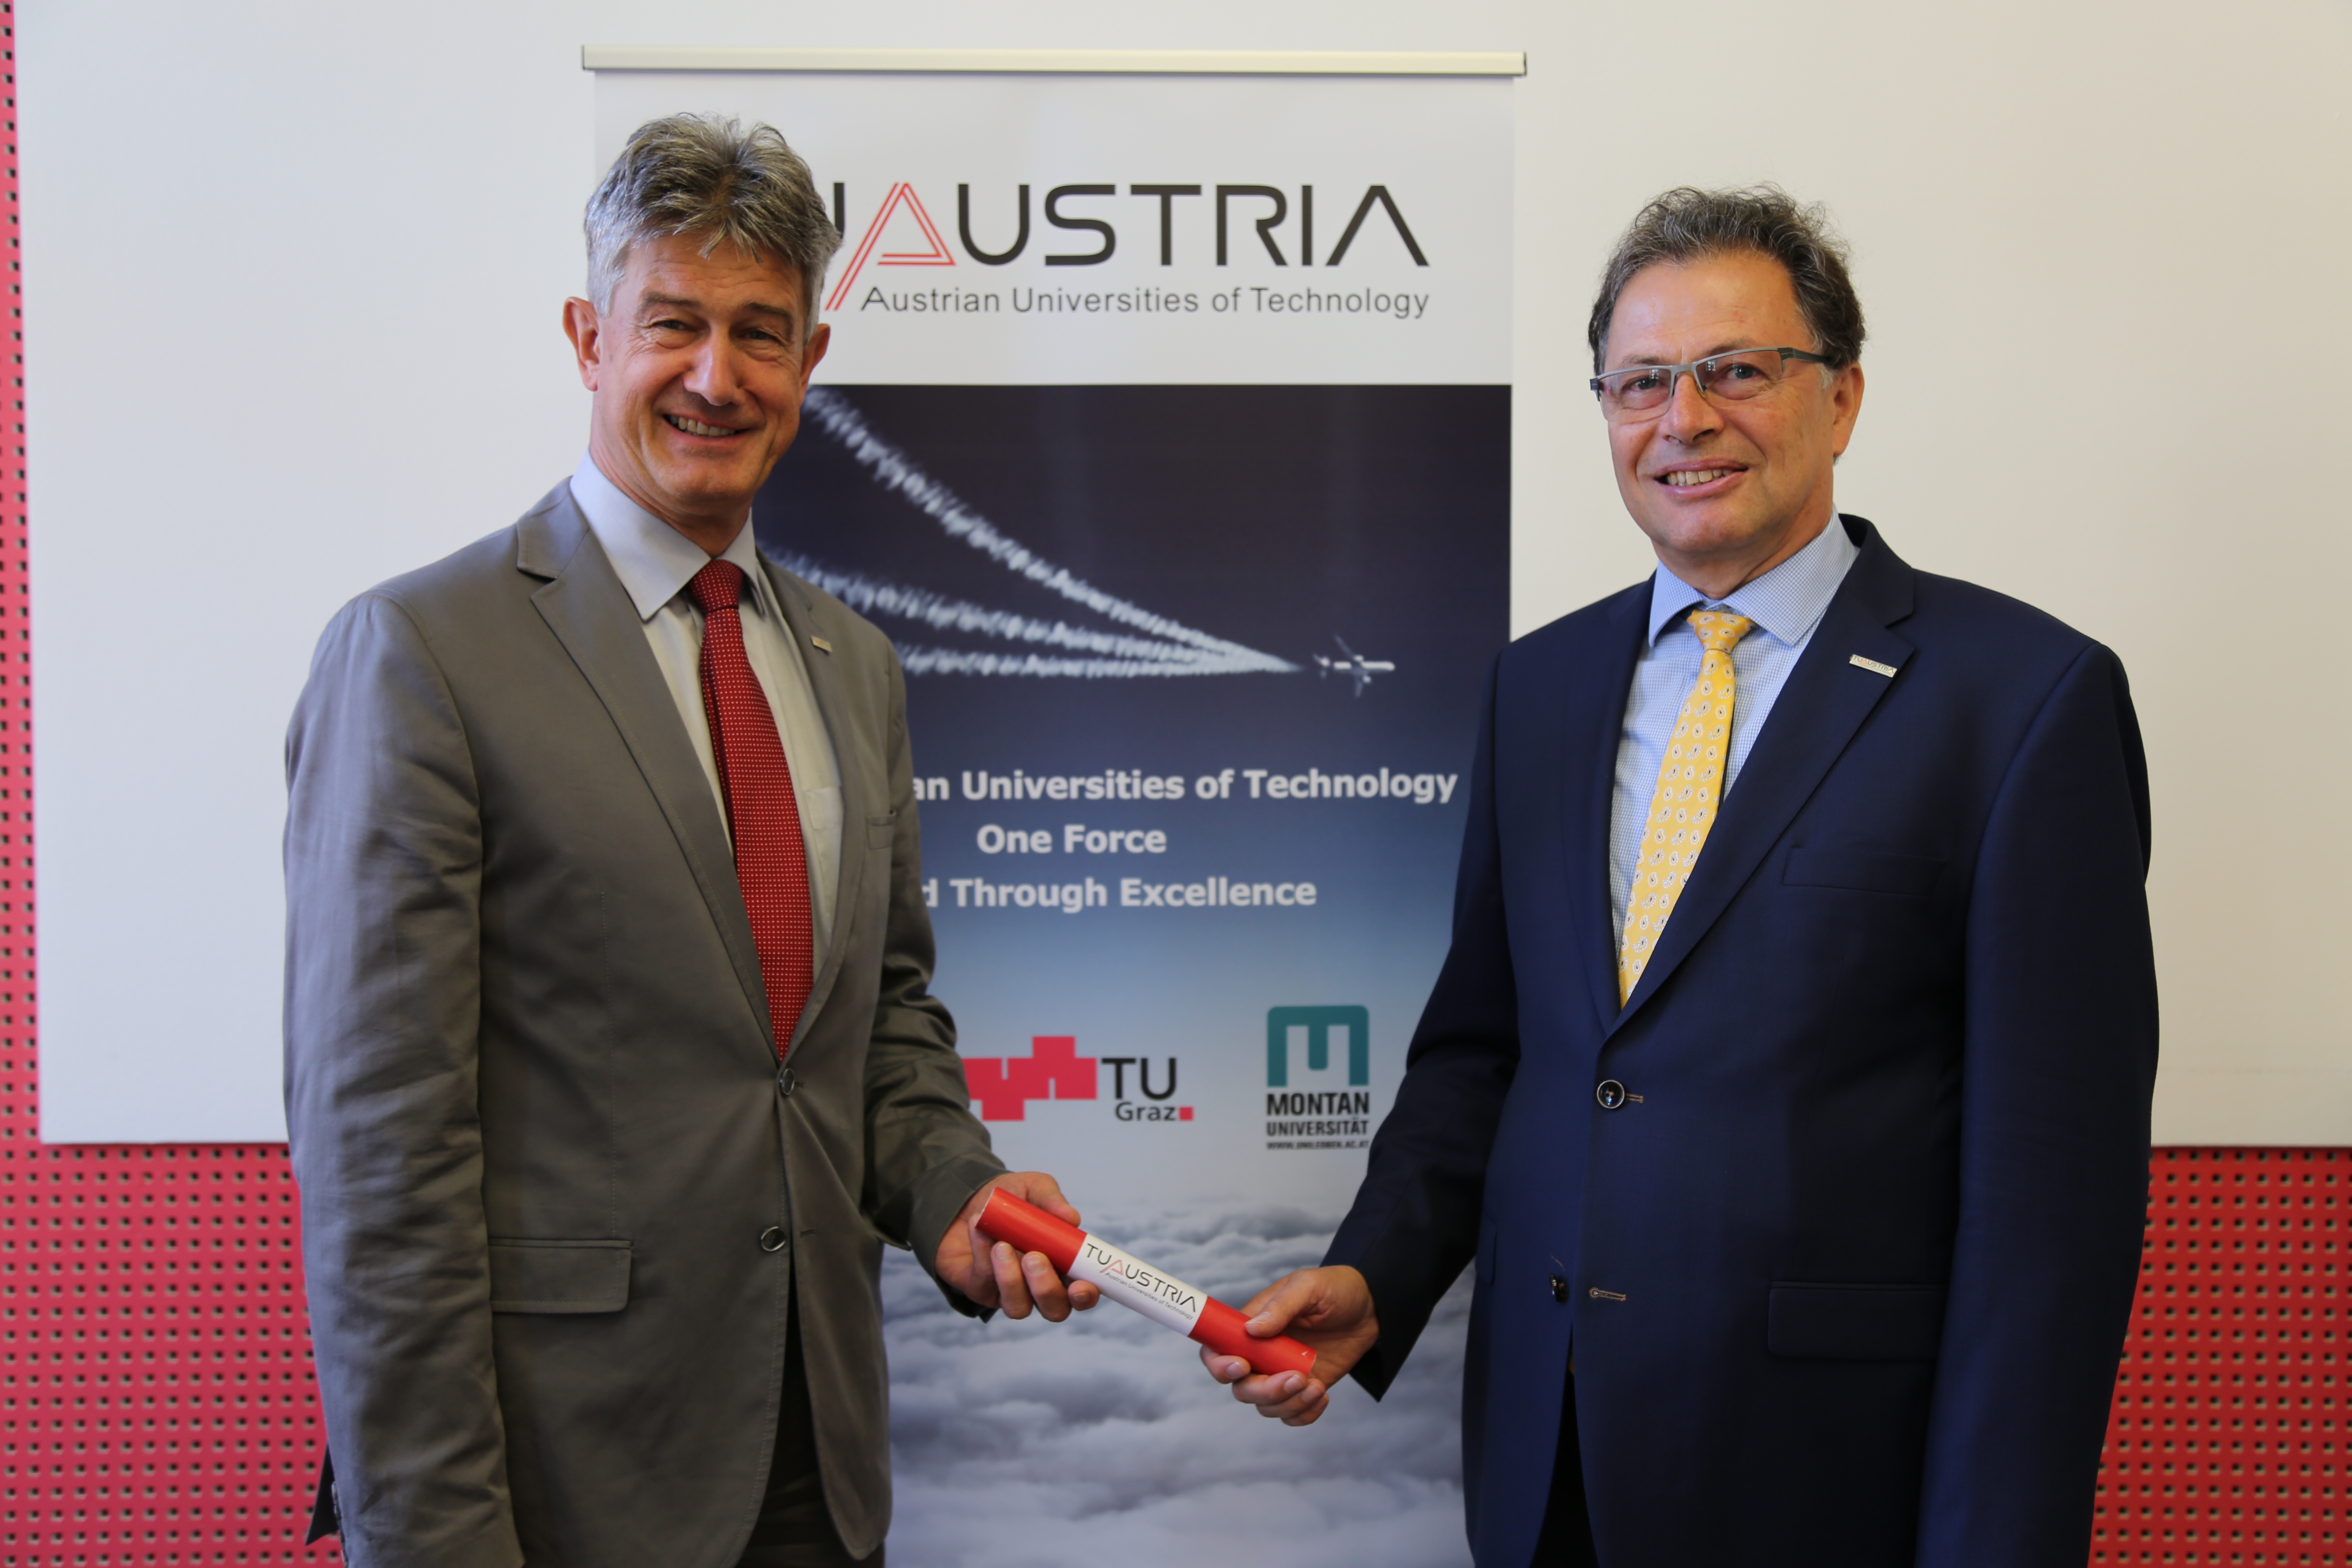 Montanuni-Rektor Wilfried Eichlseder (rechts) übernimmt mit einer symbolischen "Staffel" die Präsidentschaft der TU Austria von TU Graz-Rektor Harald Kainz (links).